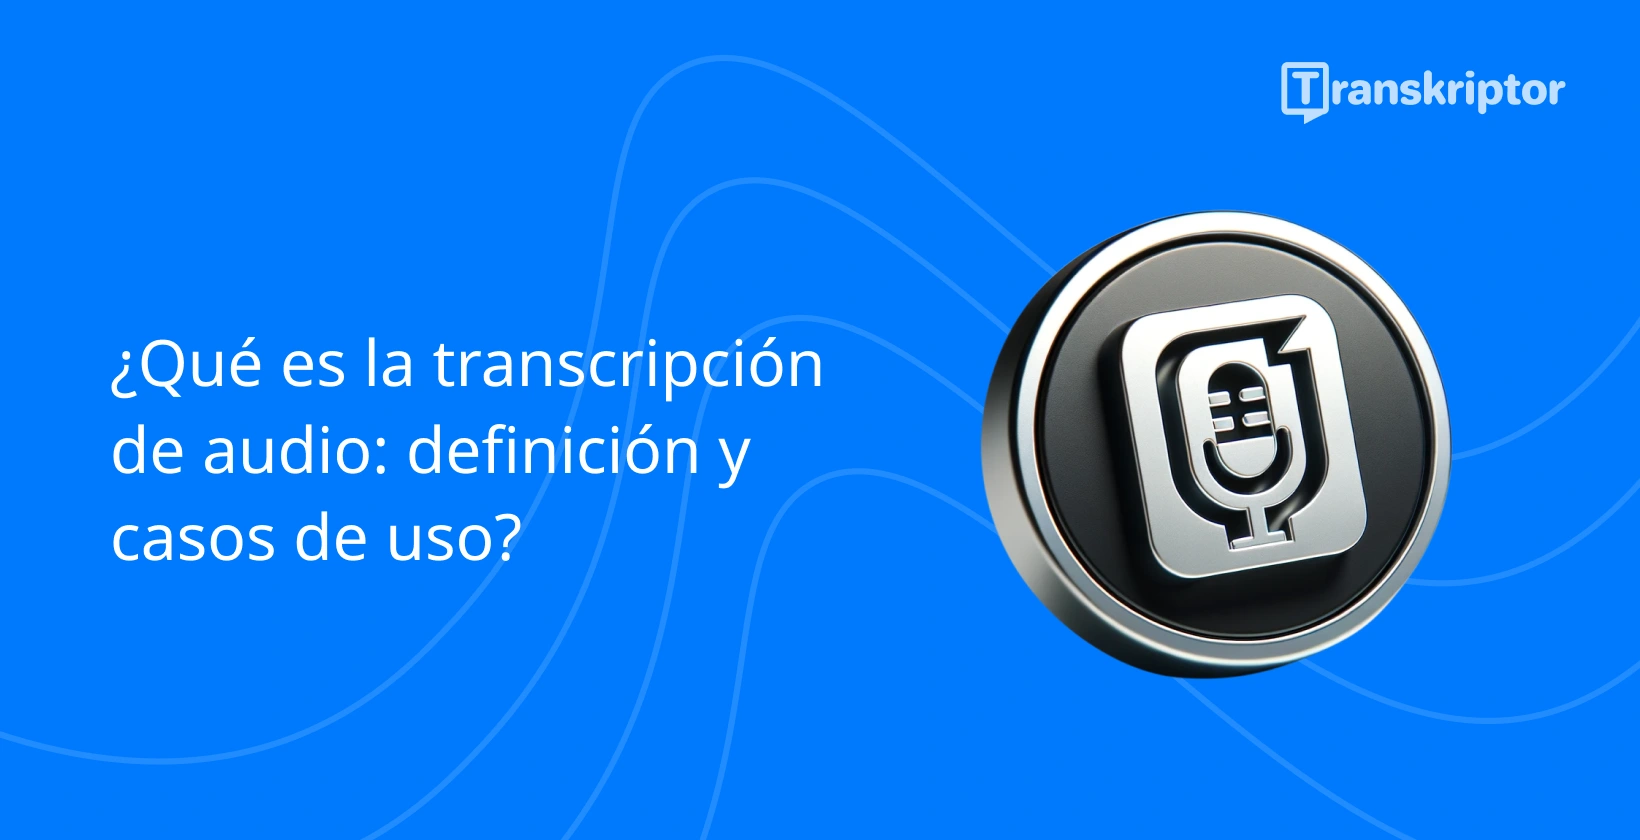 Icono de transcripción de audio con micrófono y documento sobre fondo azul para definir casos de uso de transcripción.